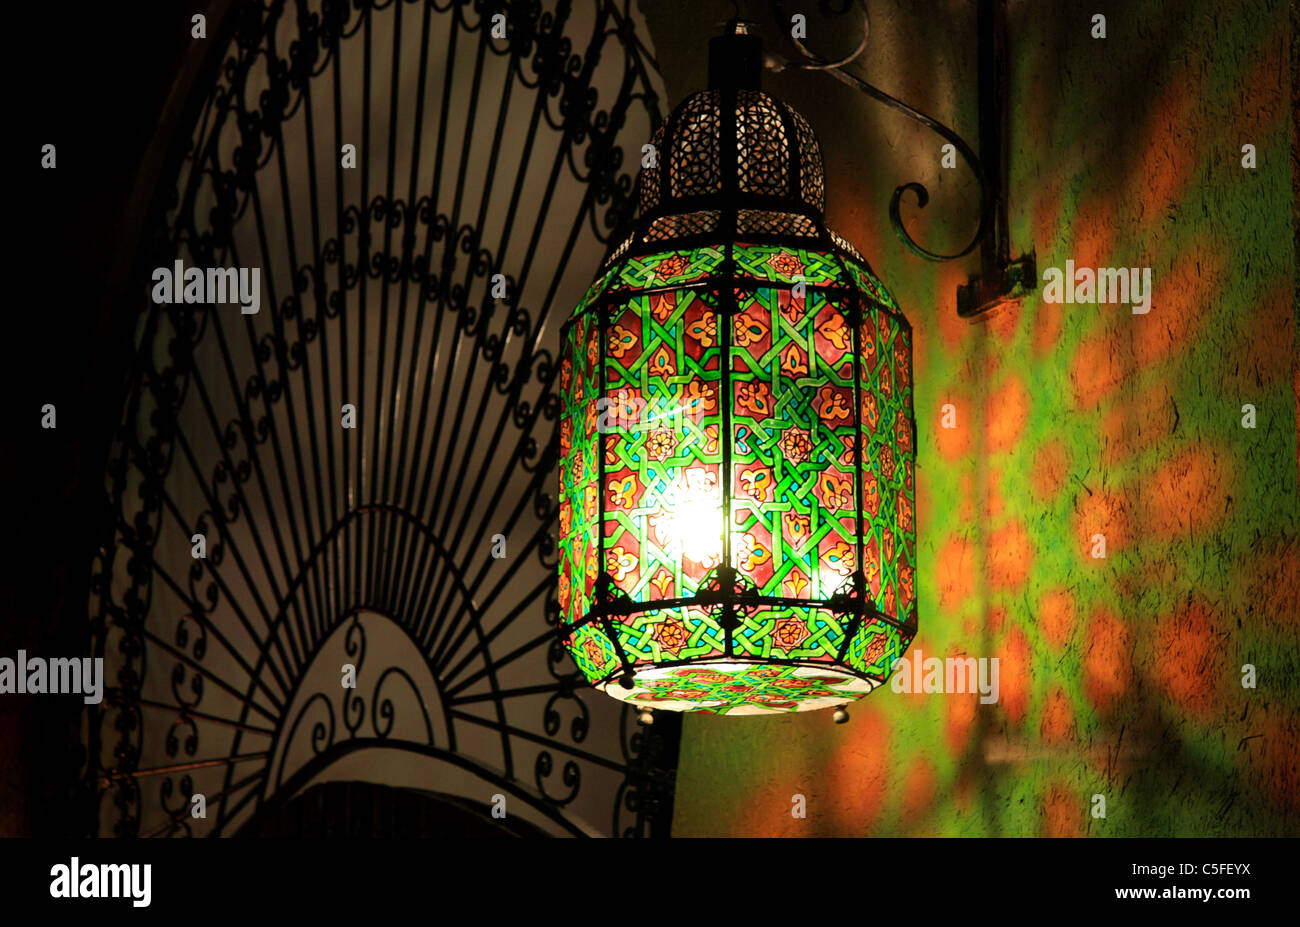 Marokkanische Laterne Lampe Licht und Reflexionen, Marokko, Nordafrika Stockfoto